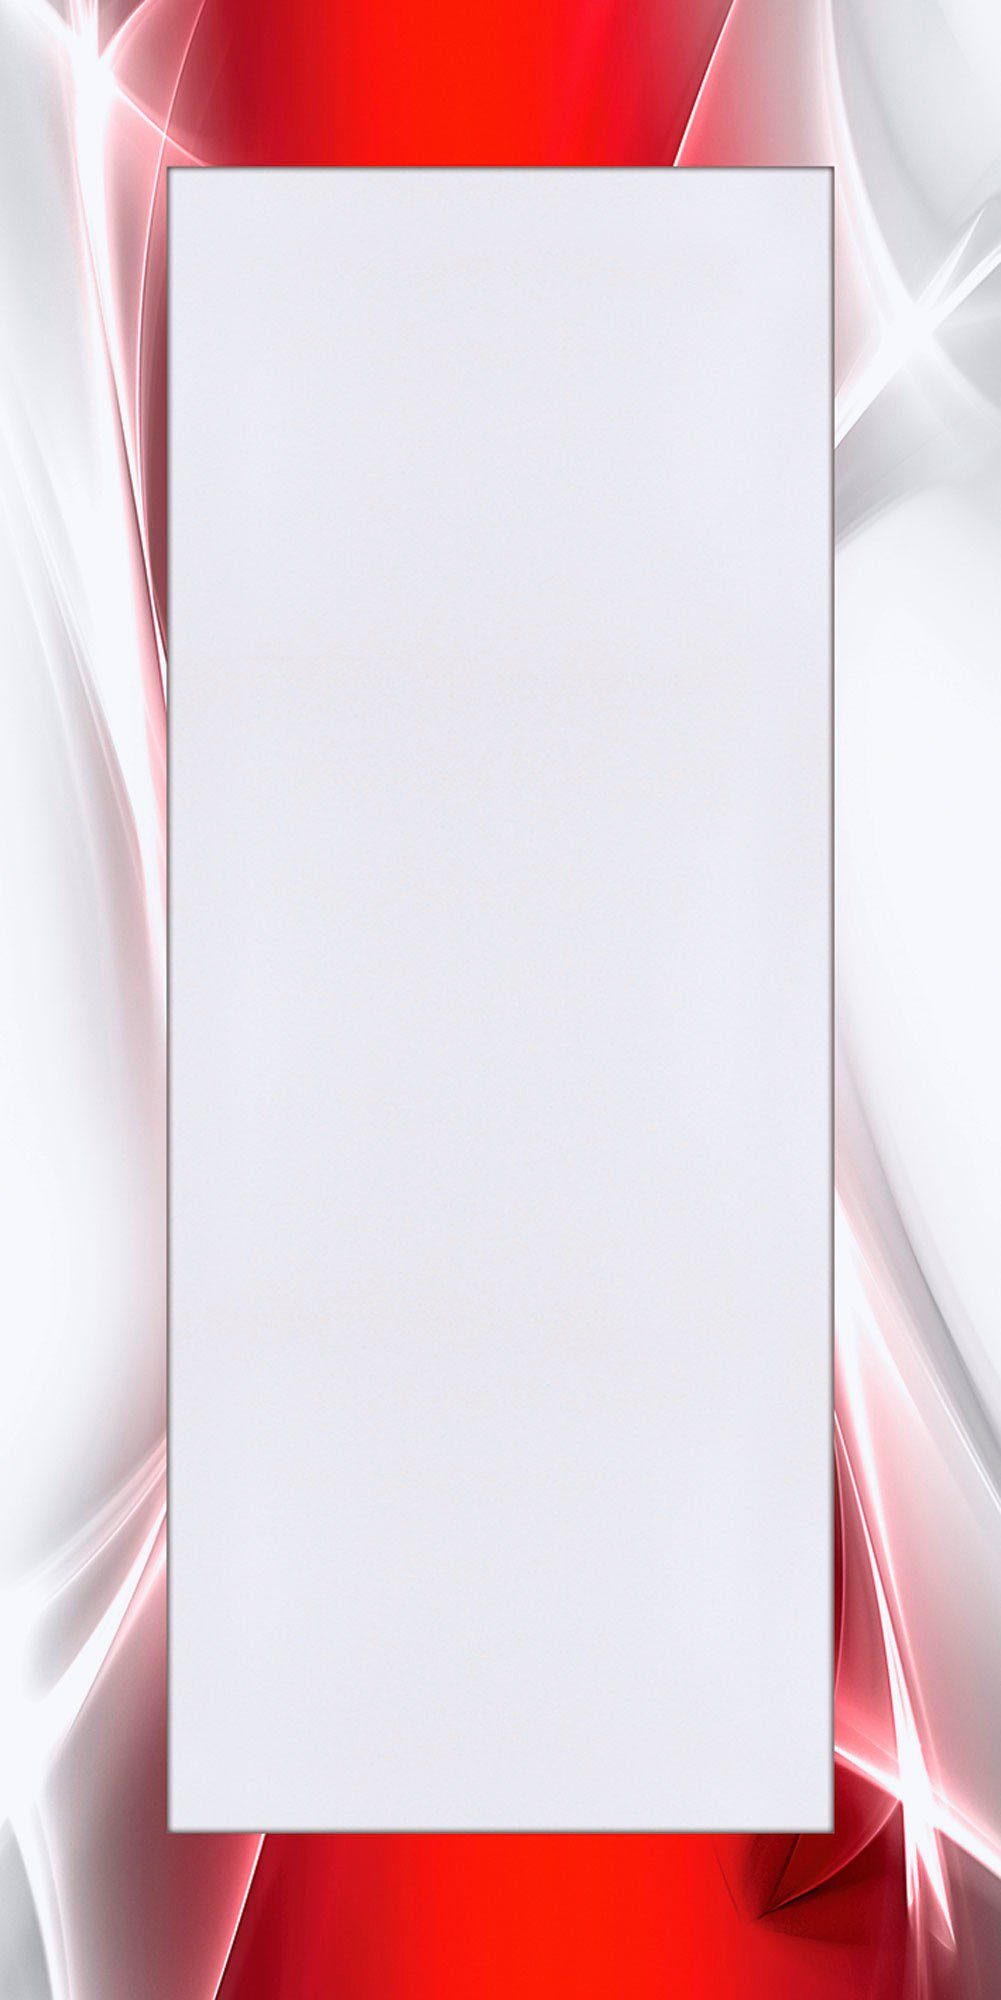 Artland Sierspiegel Creatief element rood ingelijste spiegel voor het hele lichaam met motiefrand, geschikt voor kleine, smalle hal, halspiegel, mirror spiegel omrand om op te hang